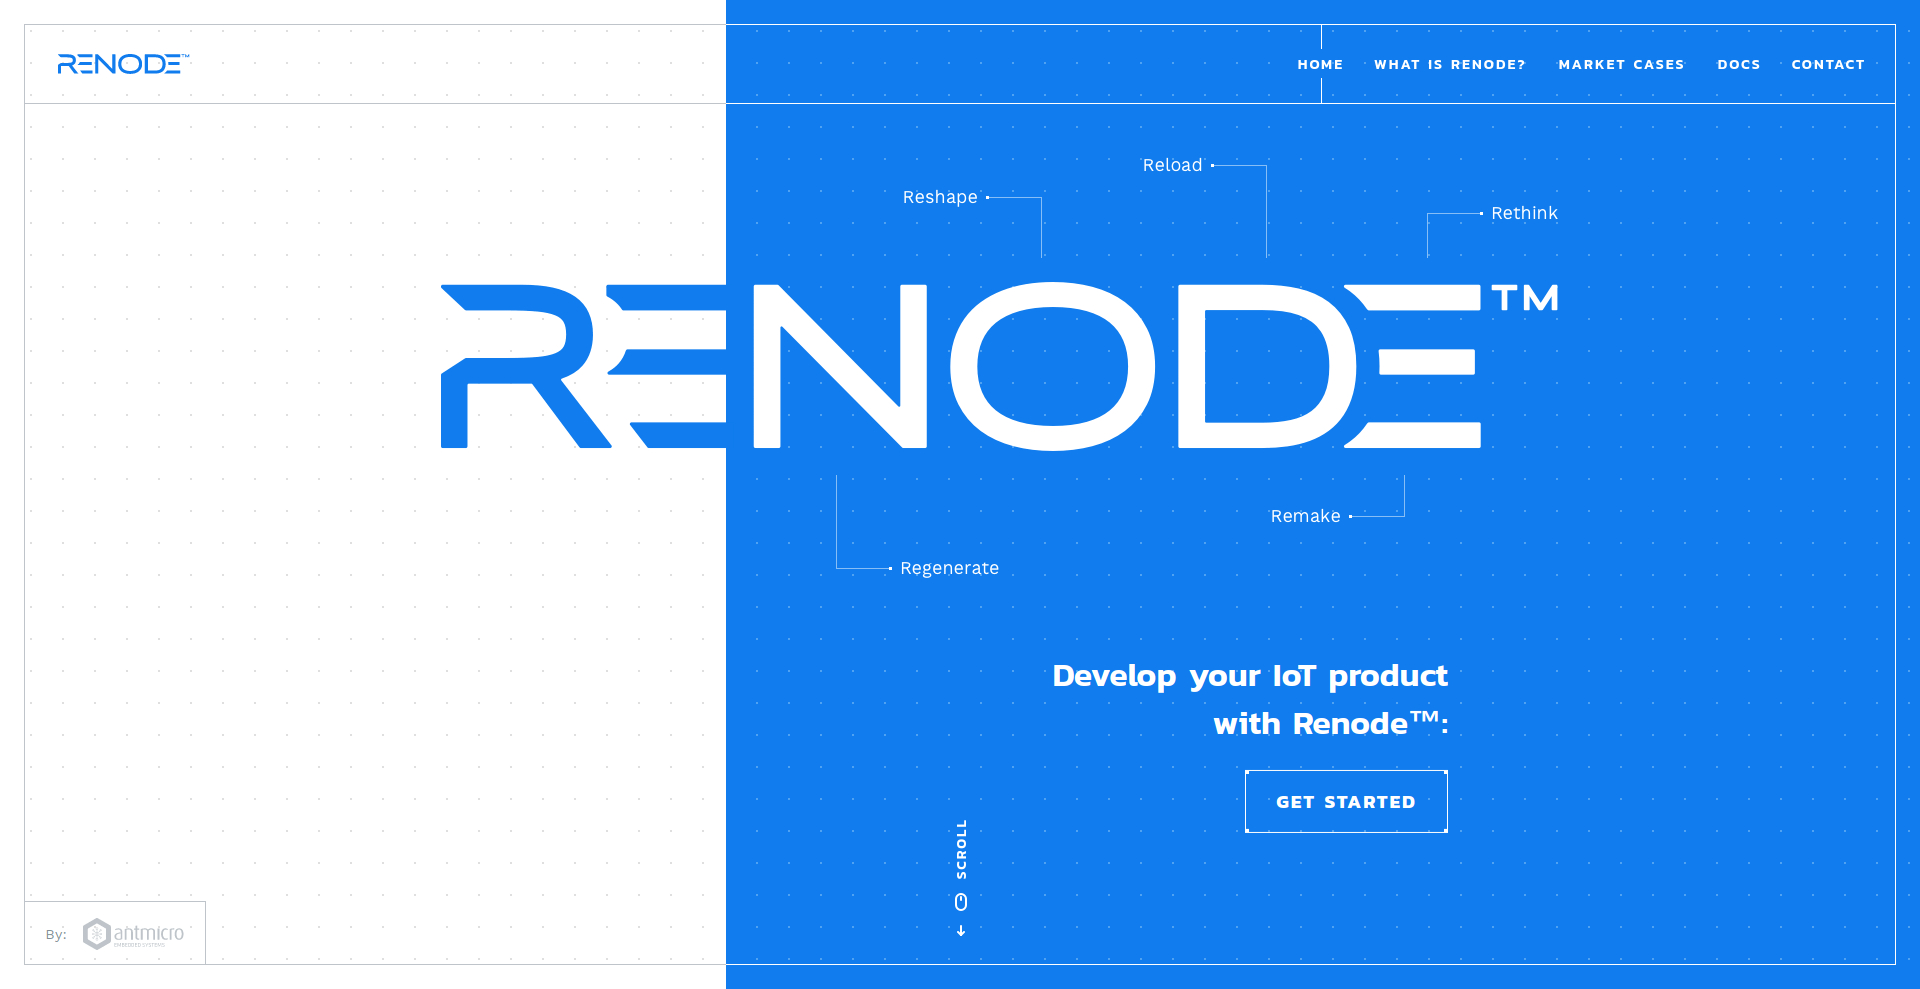 Renode website launched at the Barcelona RISC-V Workshop